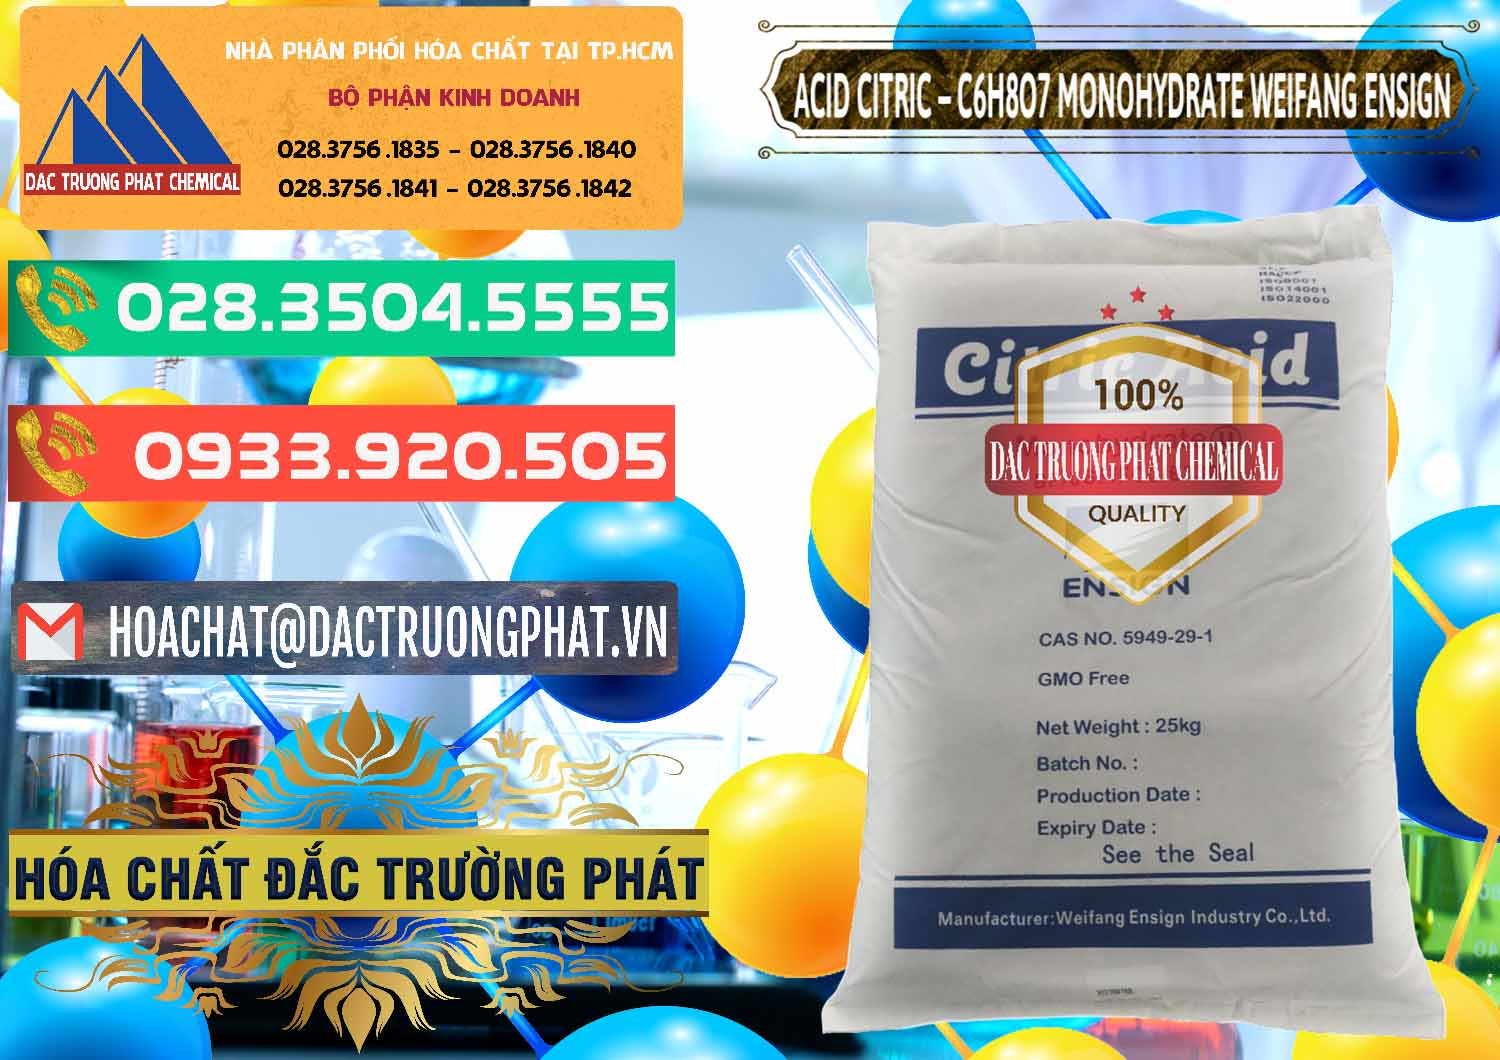 Cty chuyên bán & phân phối Acid Citric - Axit Citric Monohydrate Weifang Trung Quốc China - 0009 - Nơi chuyên kinh doanh & phân phối hóa chất tại TP.HCM - congtyhoachat.com.vn